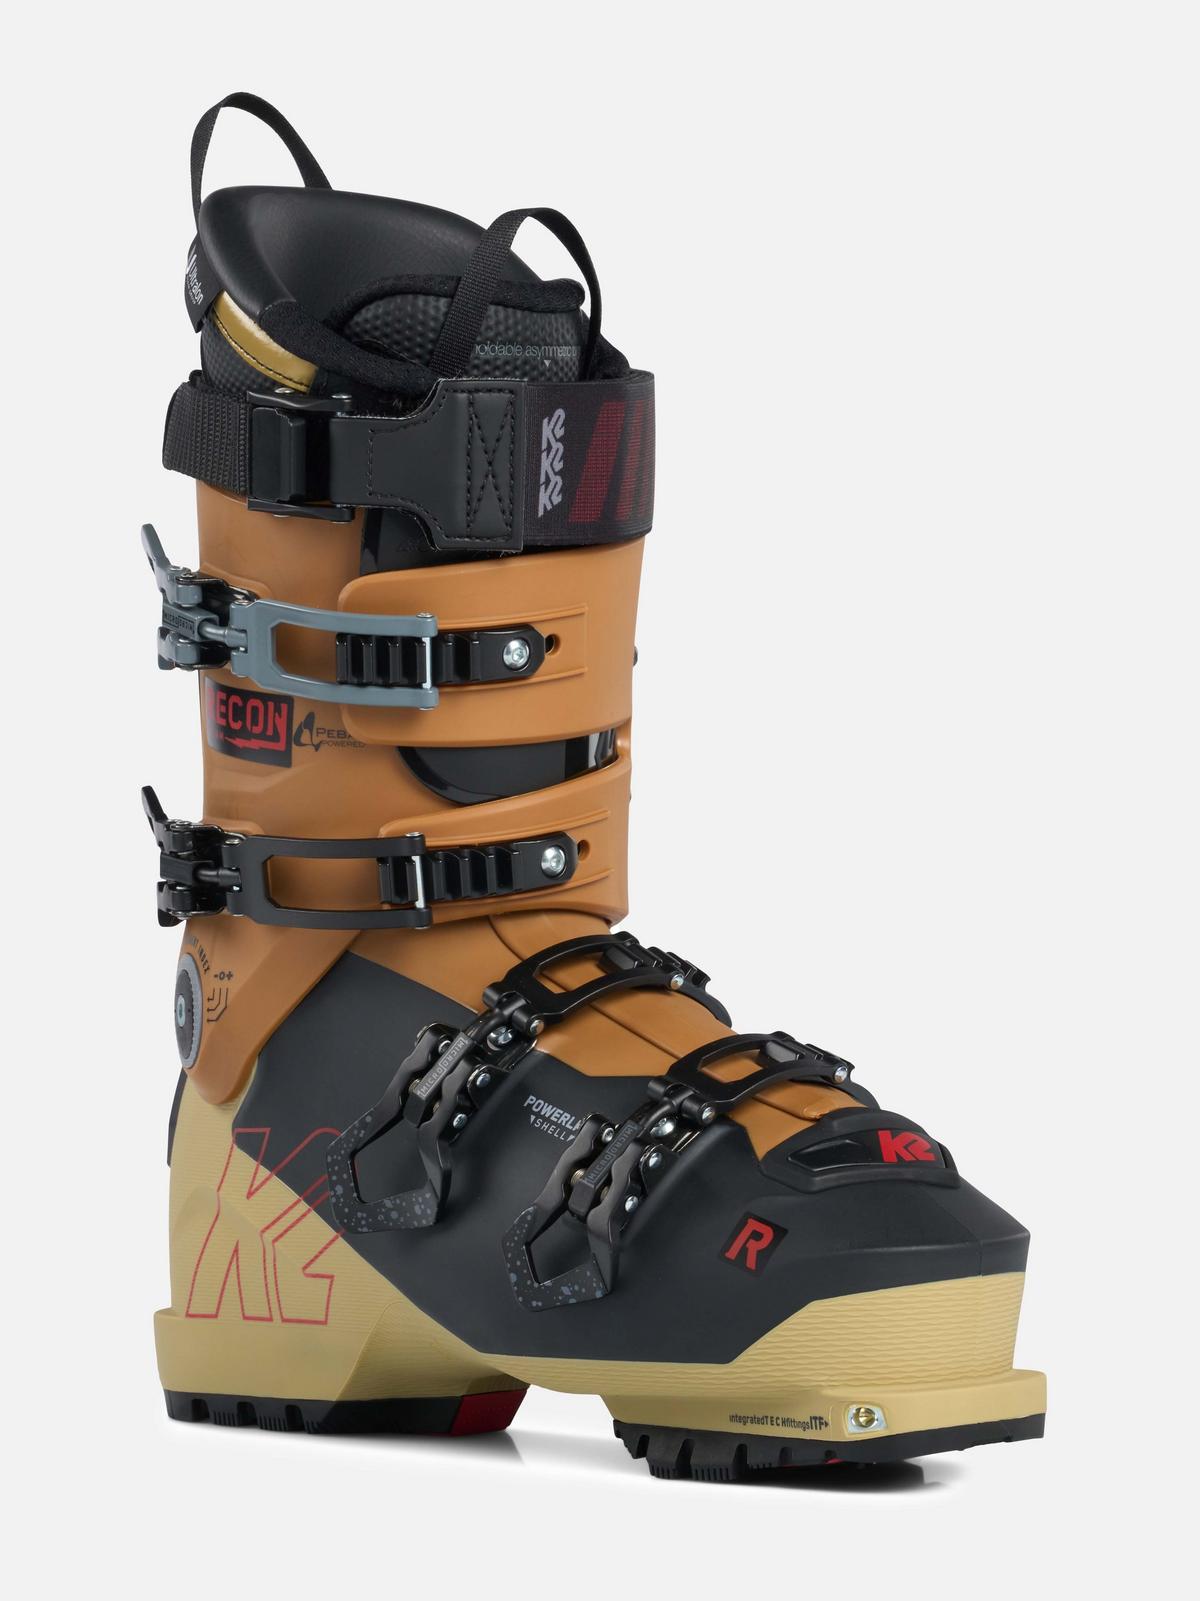 激安格安割引情報満載 輸入市場オンラインストアK2 Recon 90 MV Ski Boots Mens Sz 11.5 29.5 並行輸入品